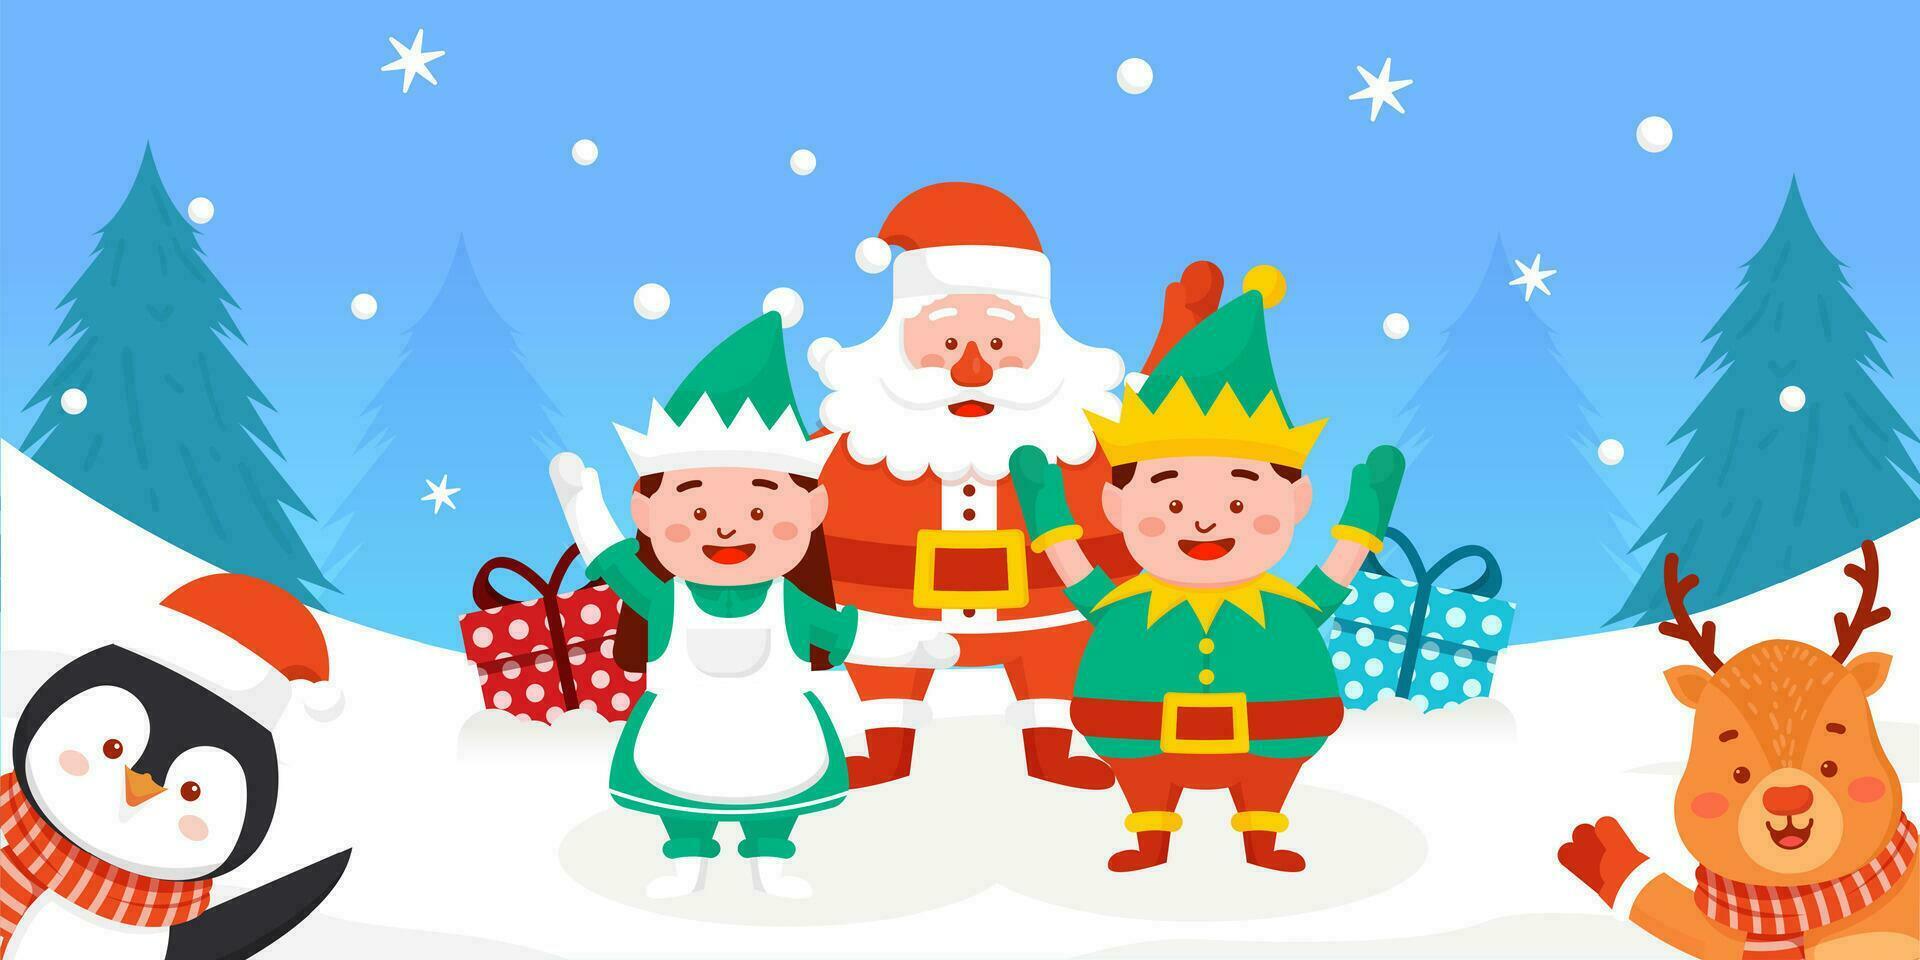 enano chica, Papa Noel noel, pingüino, reno y enano chico con alegre Navidad saludos vector